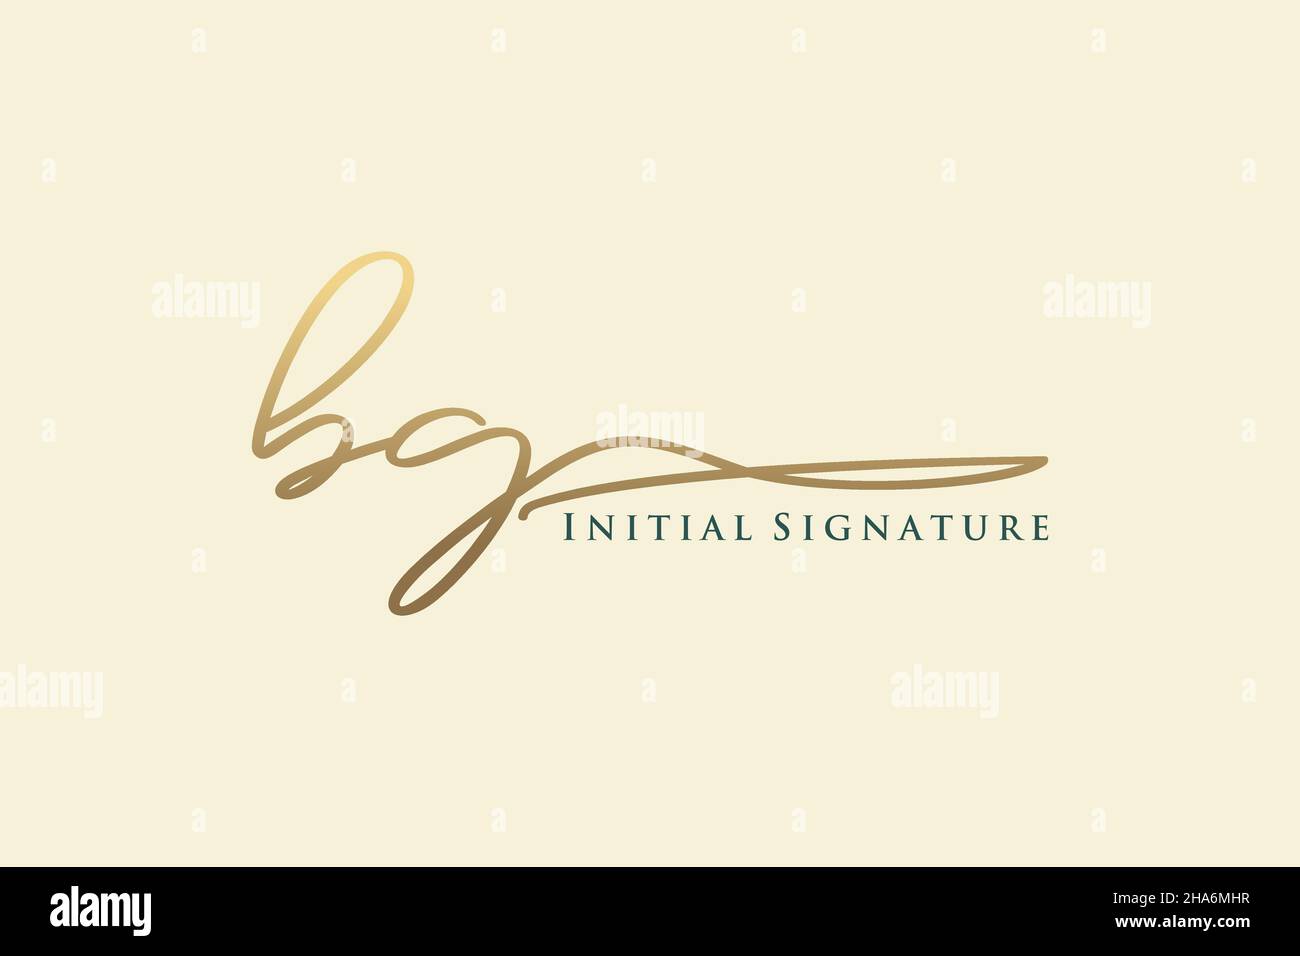 BG Letter Signature Logo Template elegant design logo. Hand drawn Calligraphy lettering Vector illustration. Stock Vector